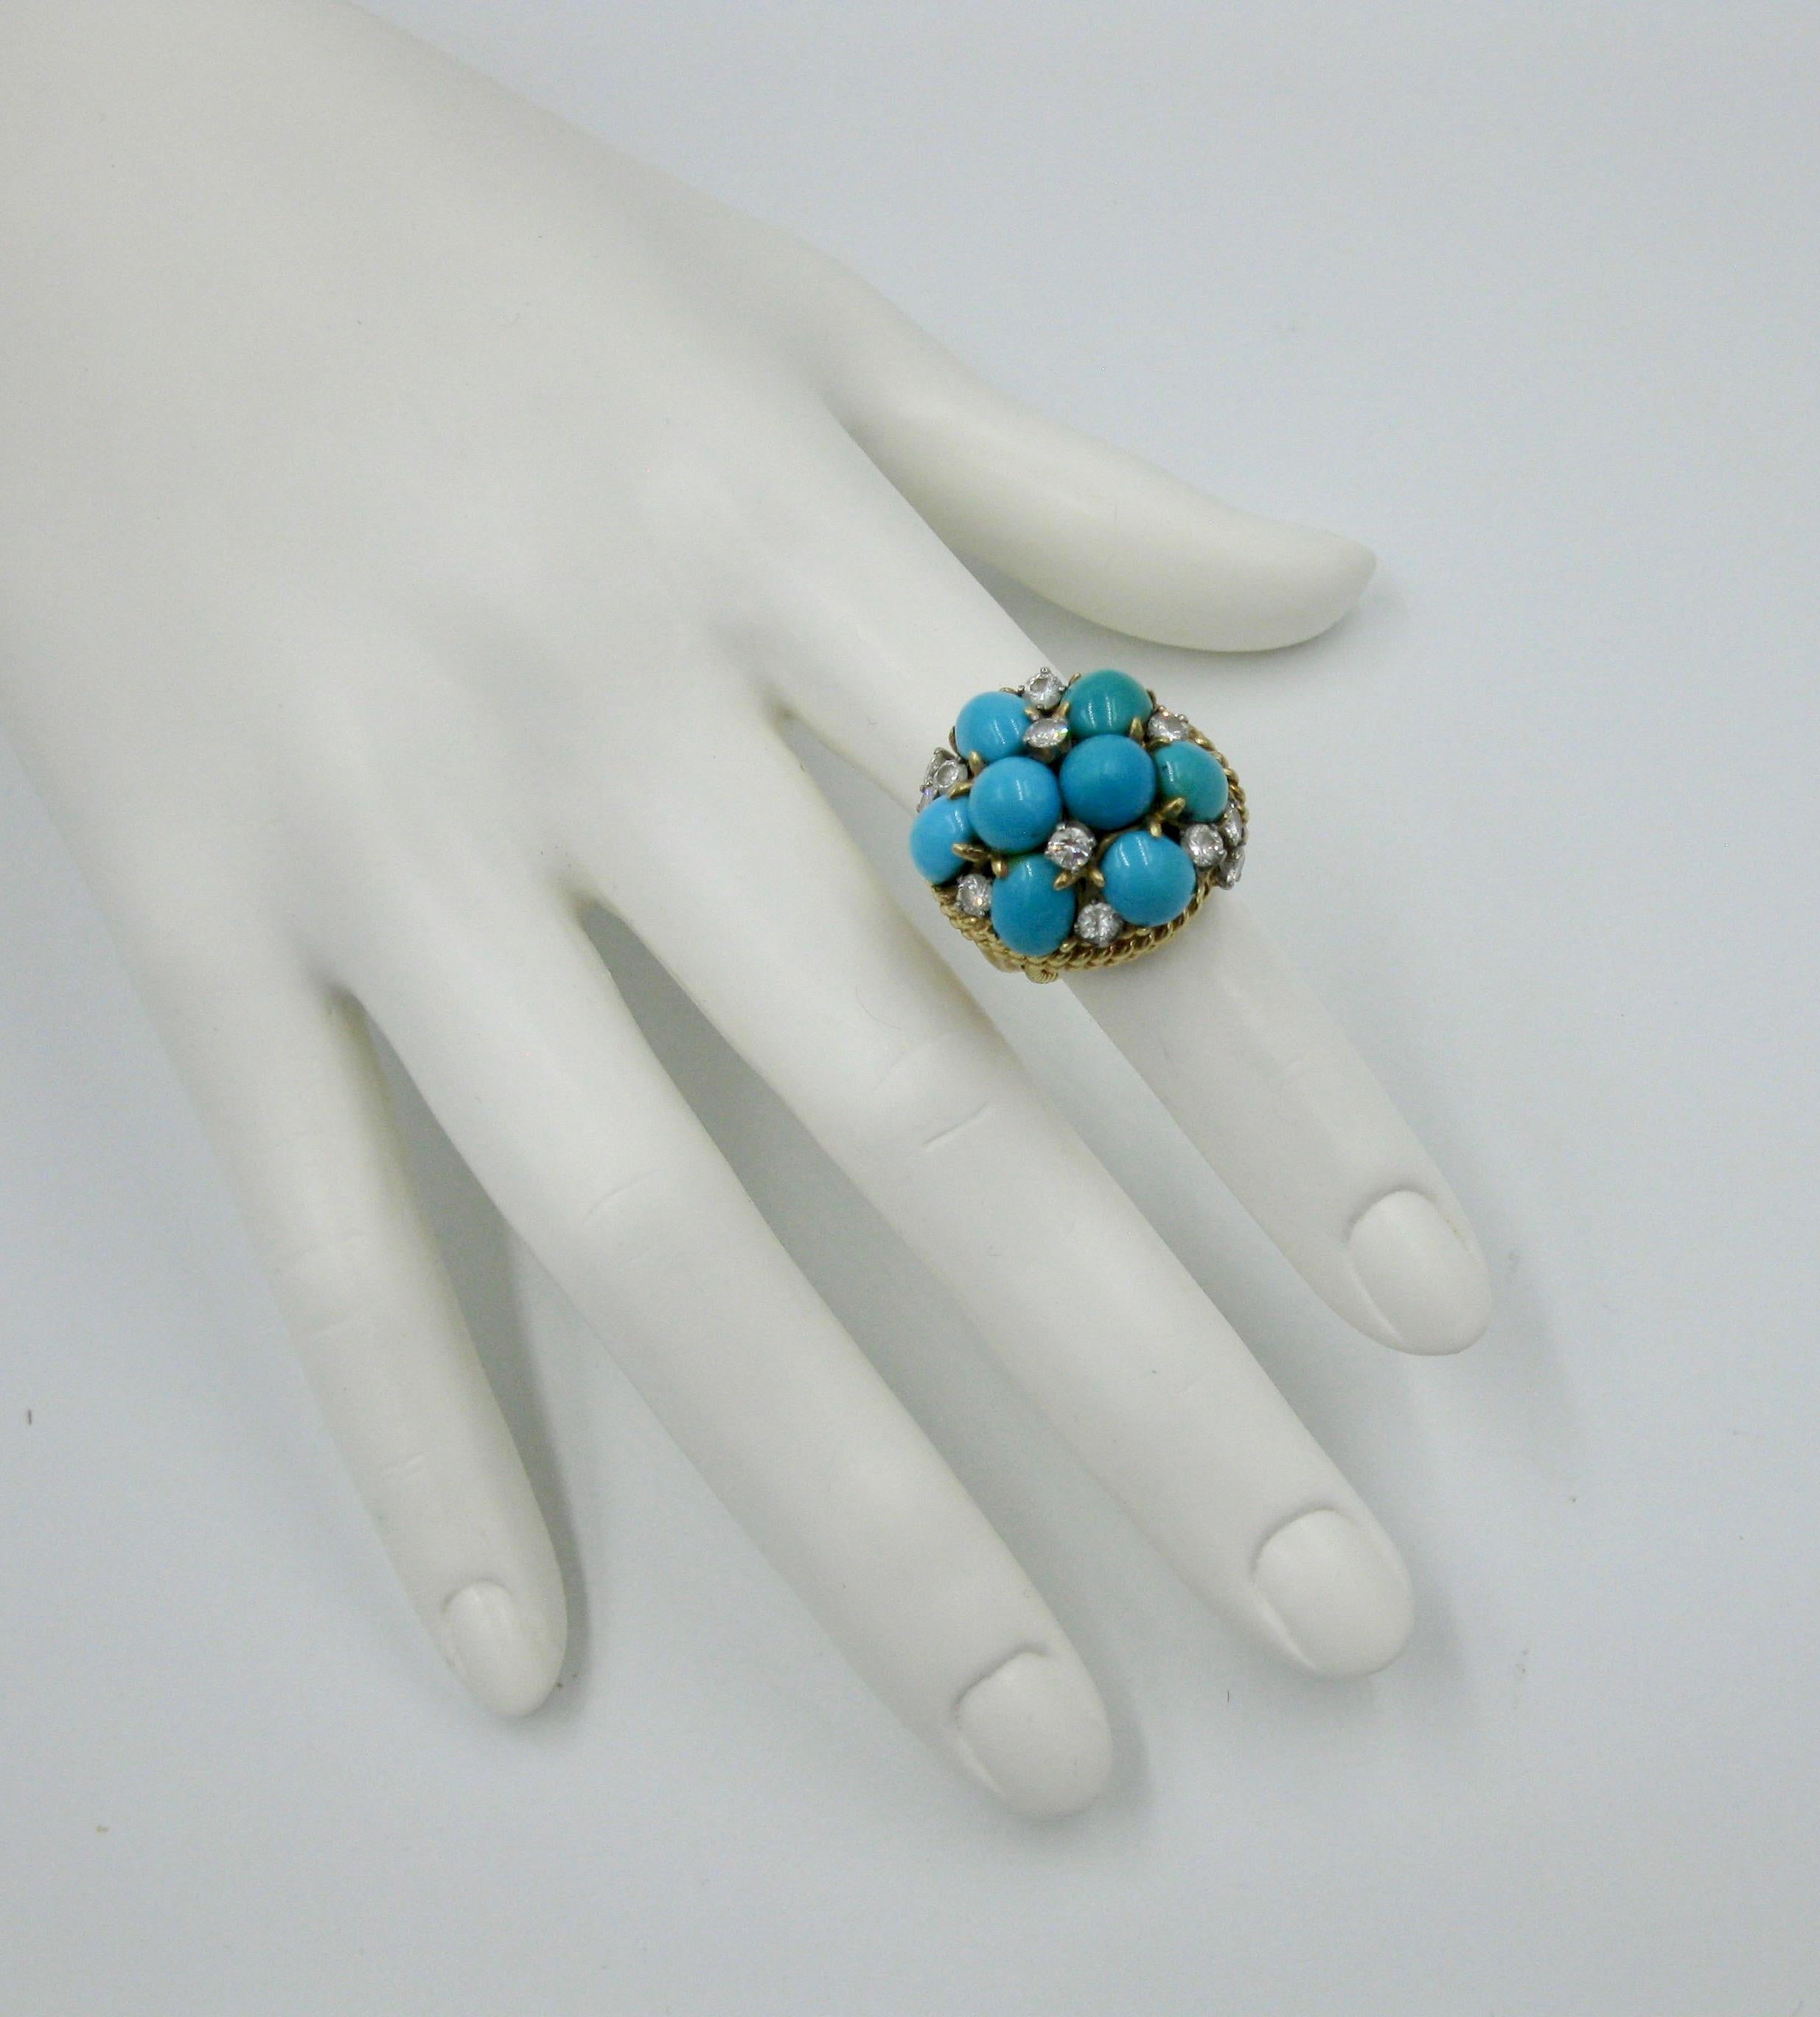 Dies ist ein prächtiger persischer Türkis-Diamant-Ring.  Das Schmuckstück ist mit acht wunderschönen ovalen und runden Cabochons aus persischem Türkis besetzt.  Der Ring ist außerdem mit 12 funkelnden weißen Diamanten besetzt, die über das Blau des